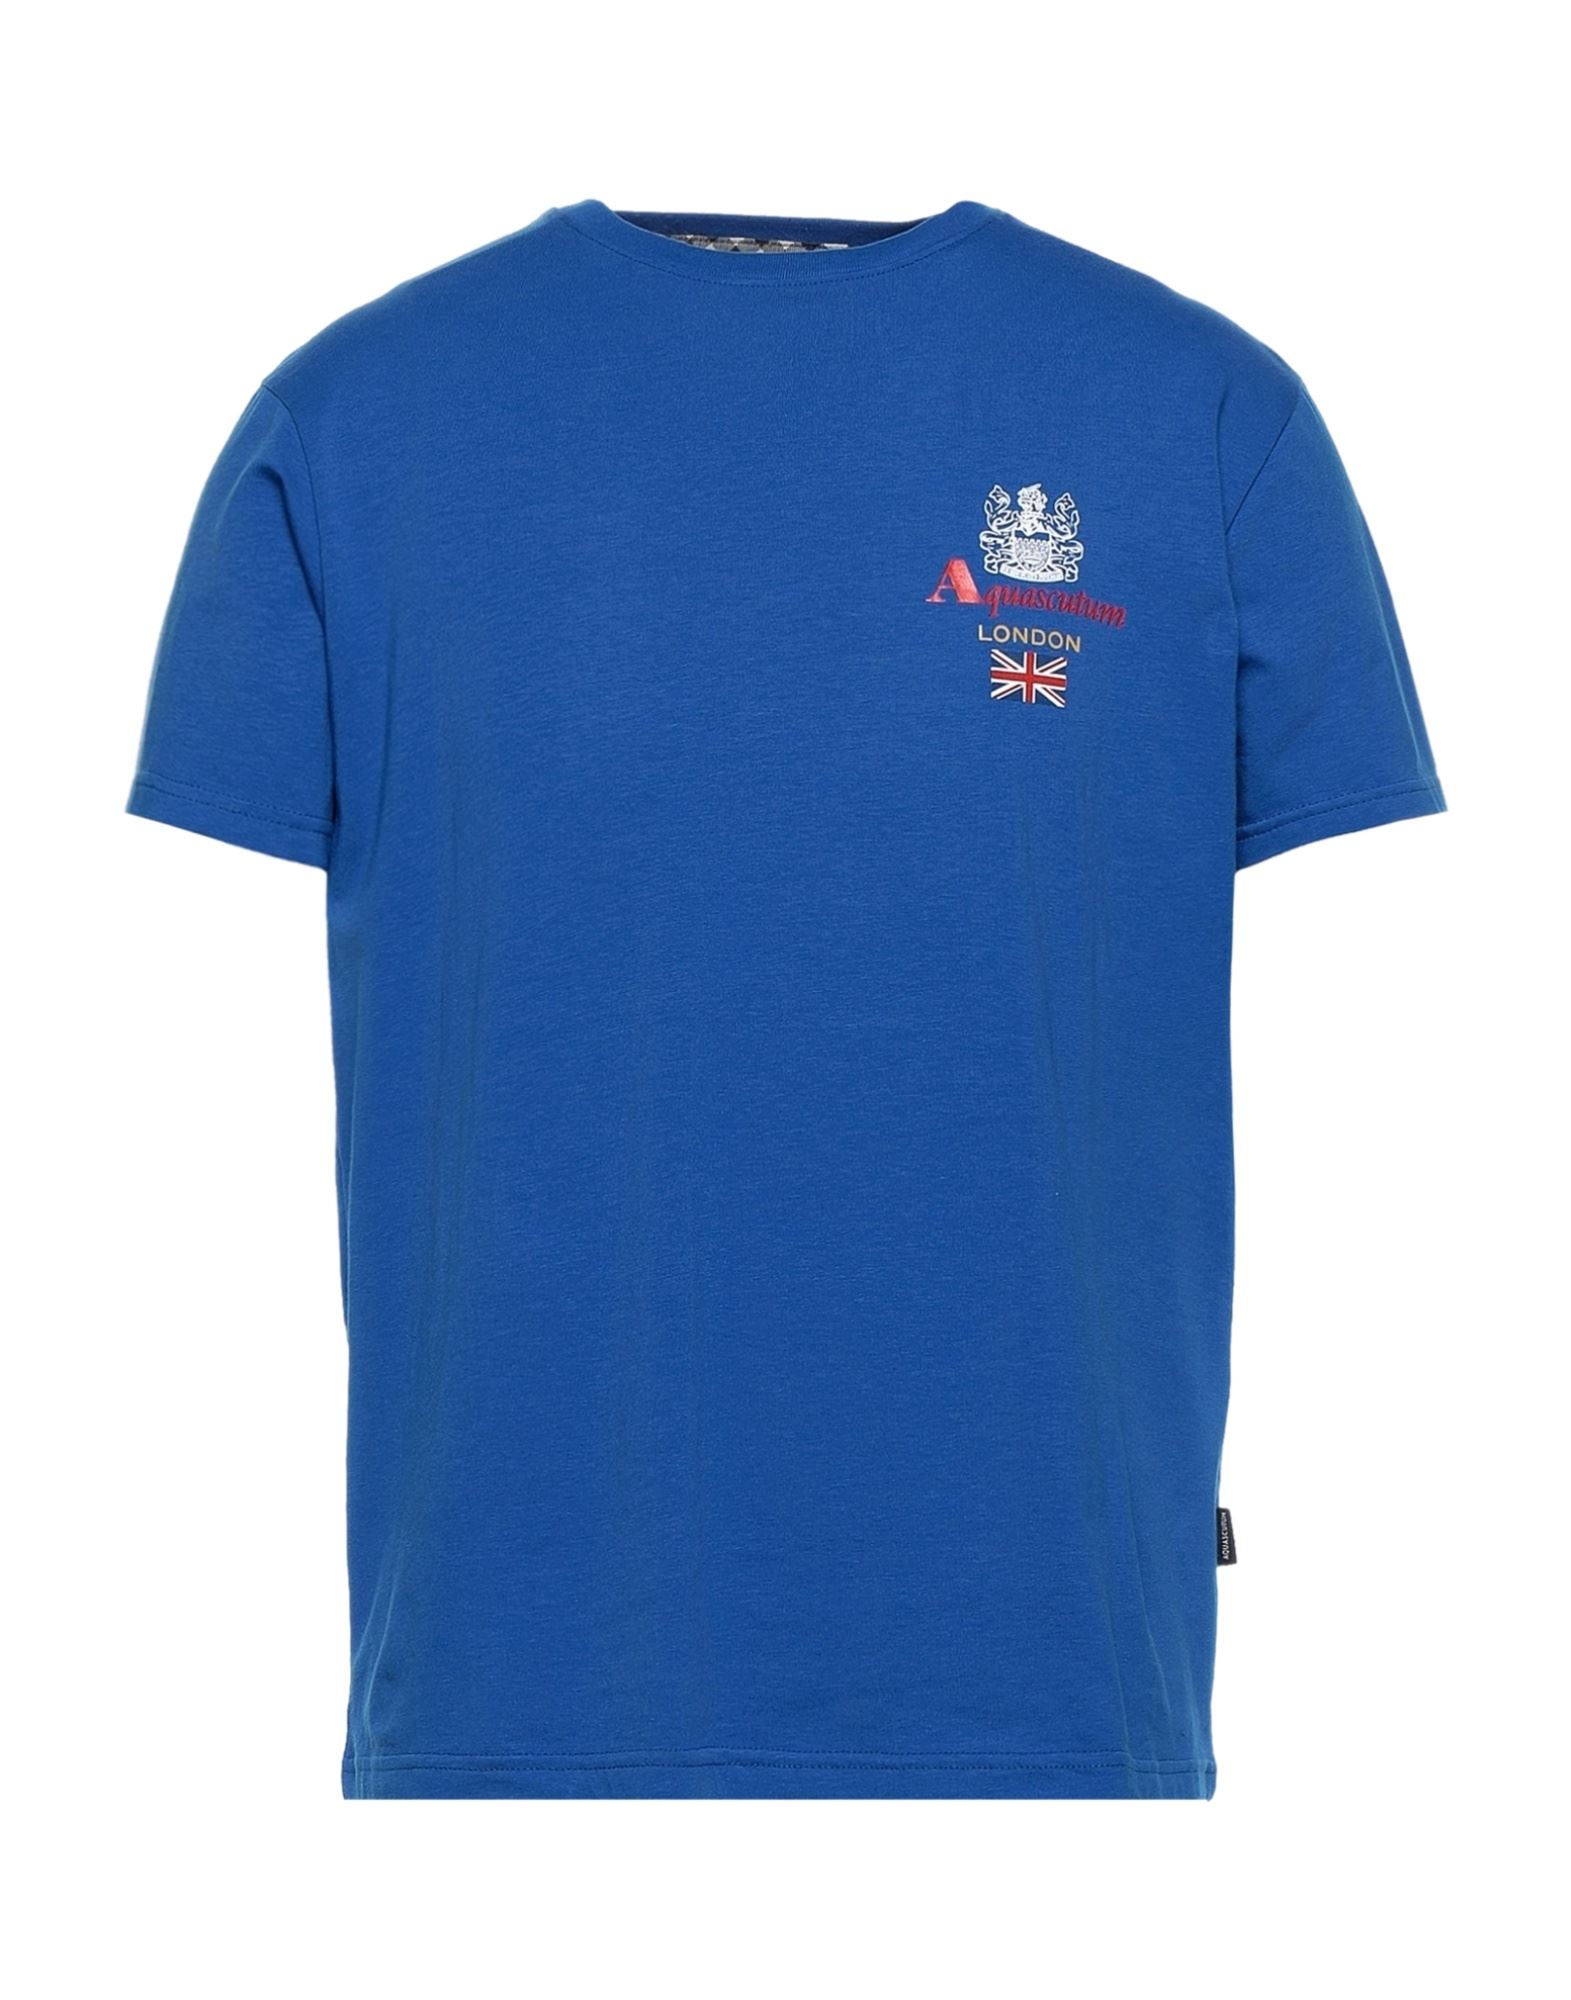 Aquascutum T-shirts In Blue